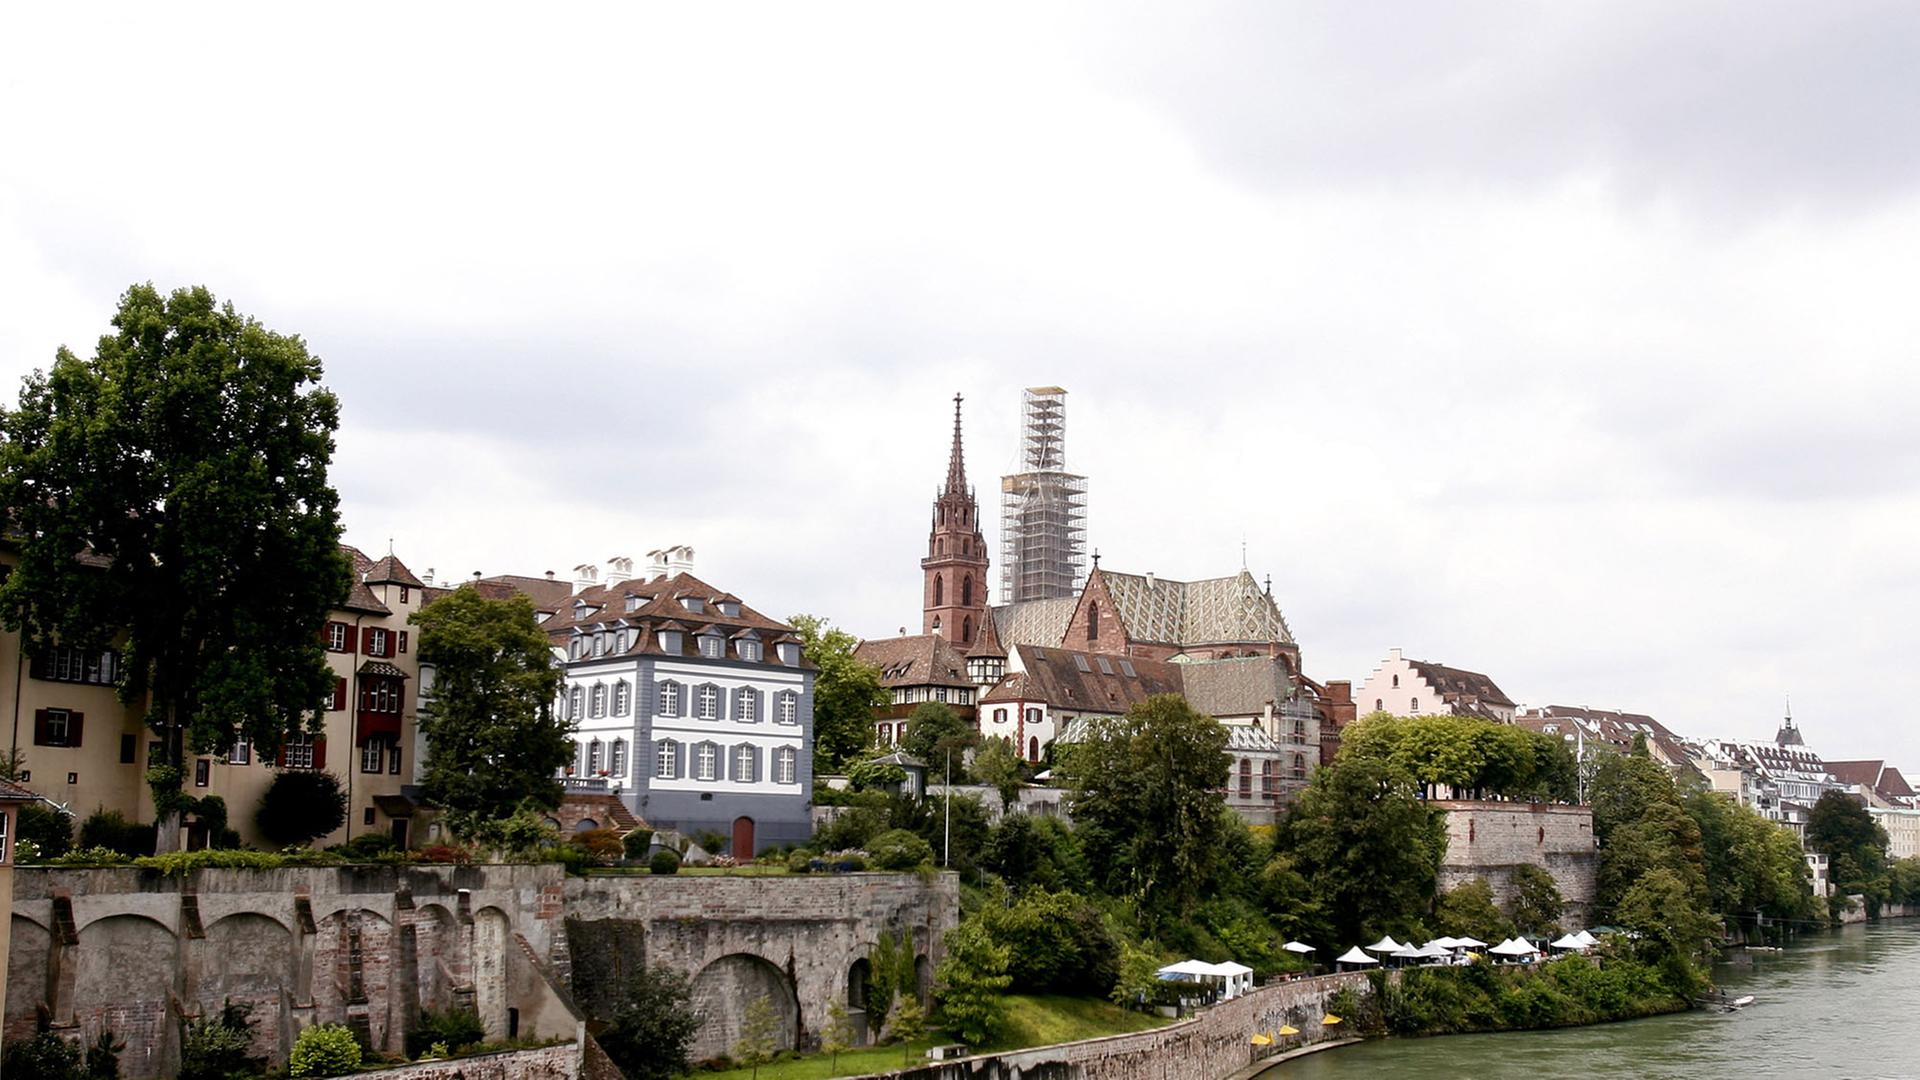 Blick am 03.08.2007 von der Wettsteibrücke über den Rhein auf den Baseler Stadtteil Grossbasel mit dem Münster der Stadt.